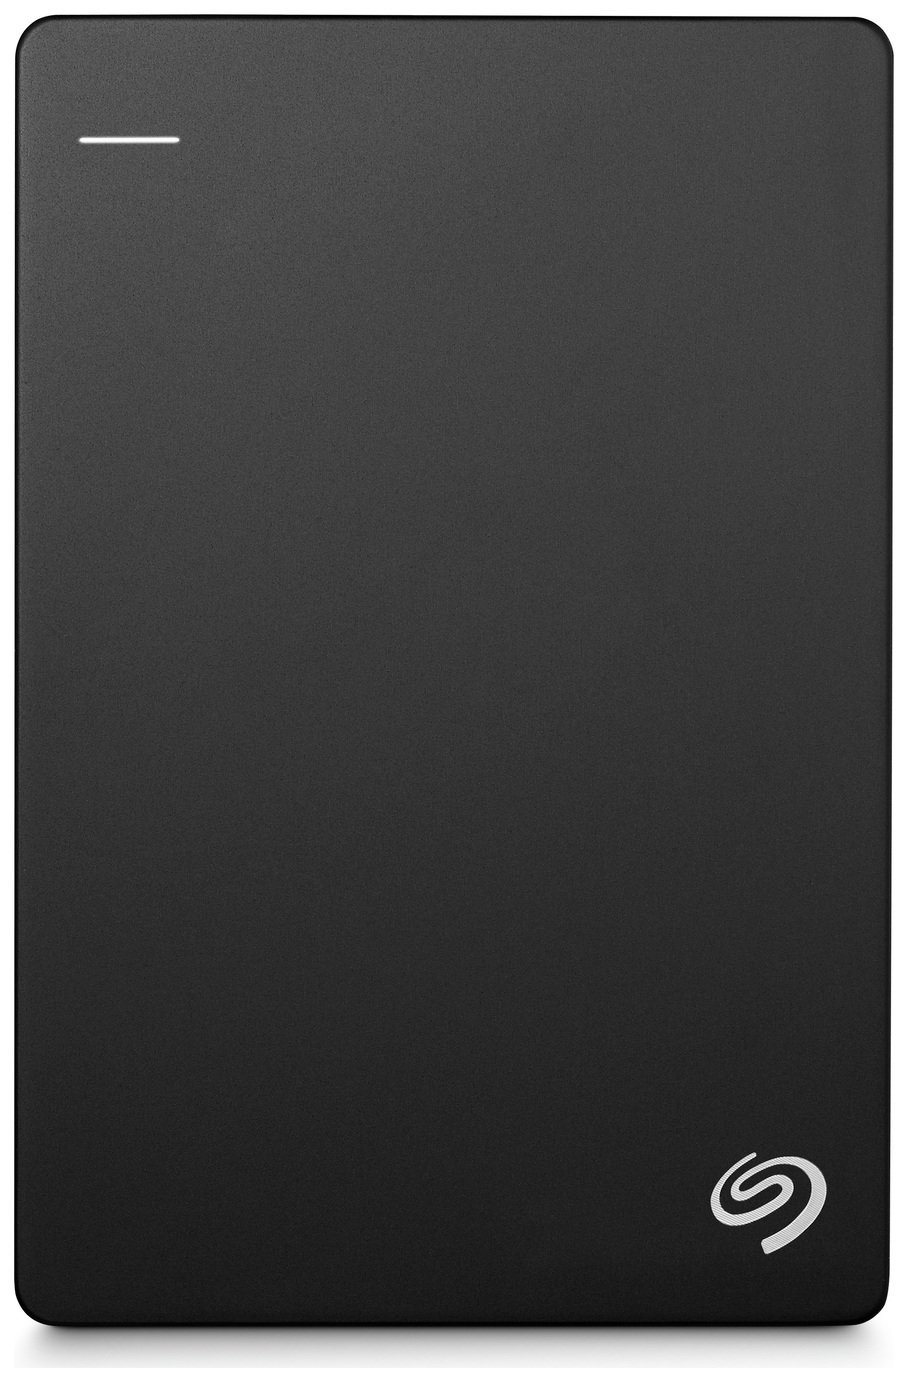 Seagate BUP 1TB Slim Portable Hard Drive - Black